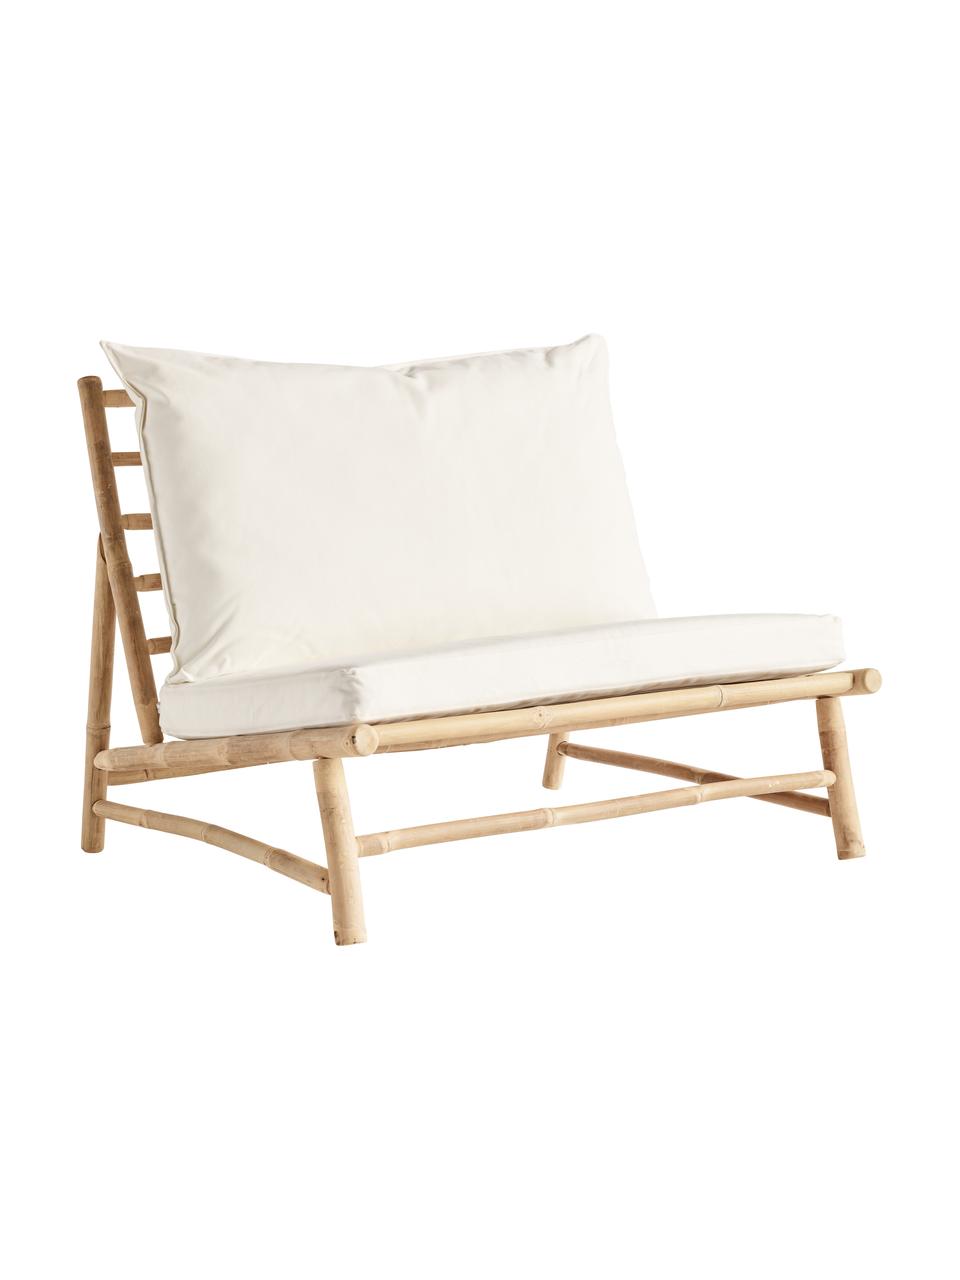 Fotel wypoczynkowy XL z drewna bambusowego Bamslow, Stelaż: drewno bambusowe, Tapicerka: 100% bawełna, Biały, brązowy, S 100 x G 87 cm